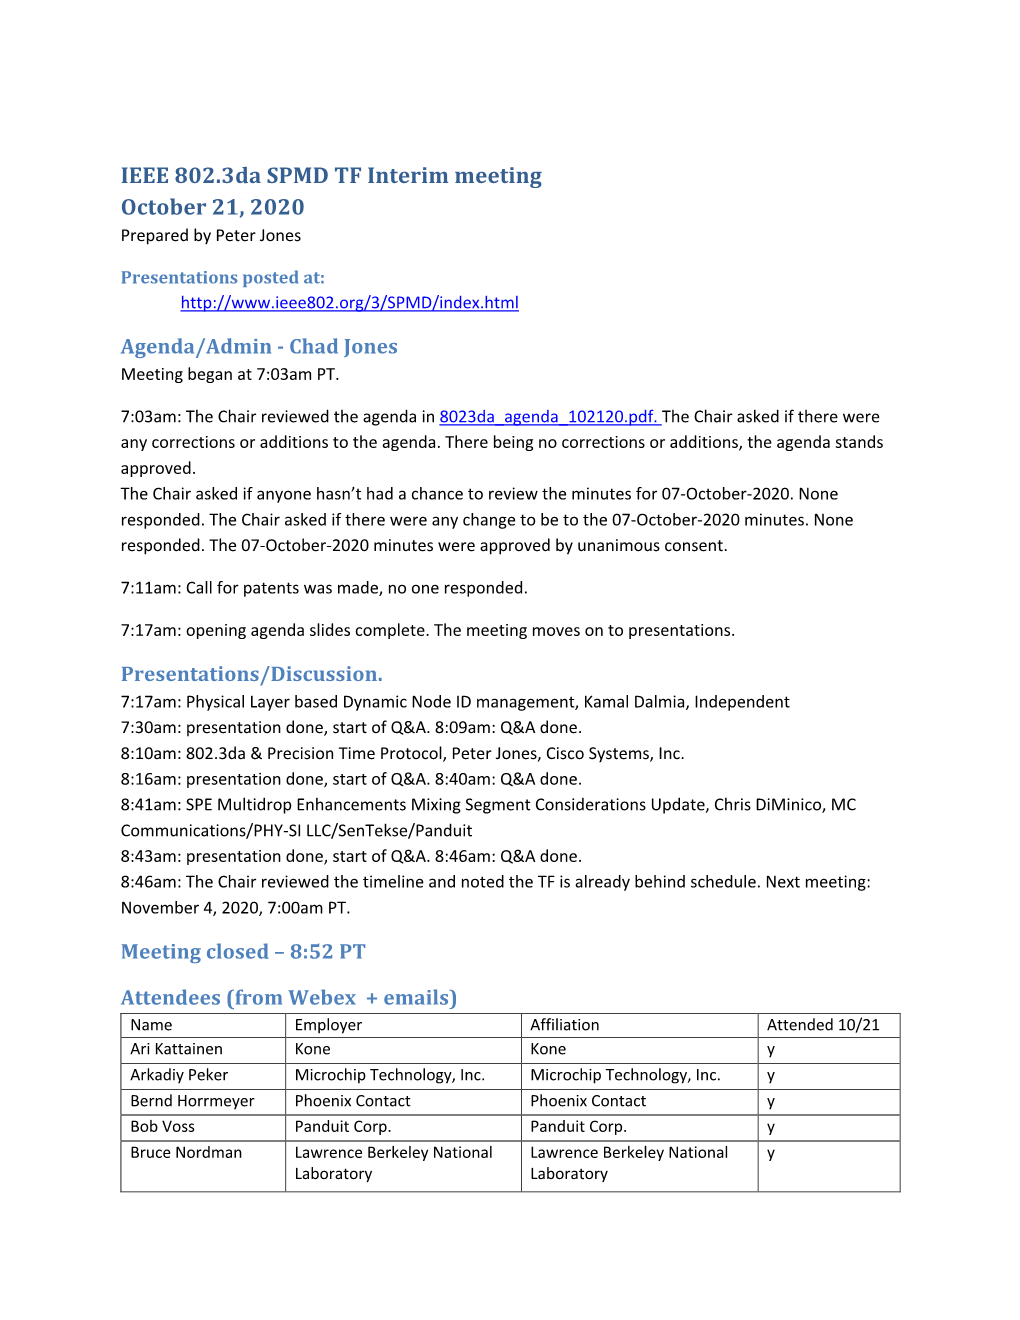 IEEE 802.3Da SPMD TF Interim Meeting October 21, 2020 Prepared by Peter Jones